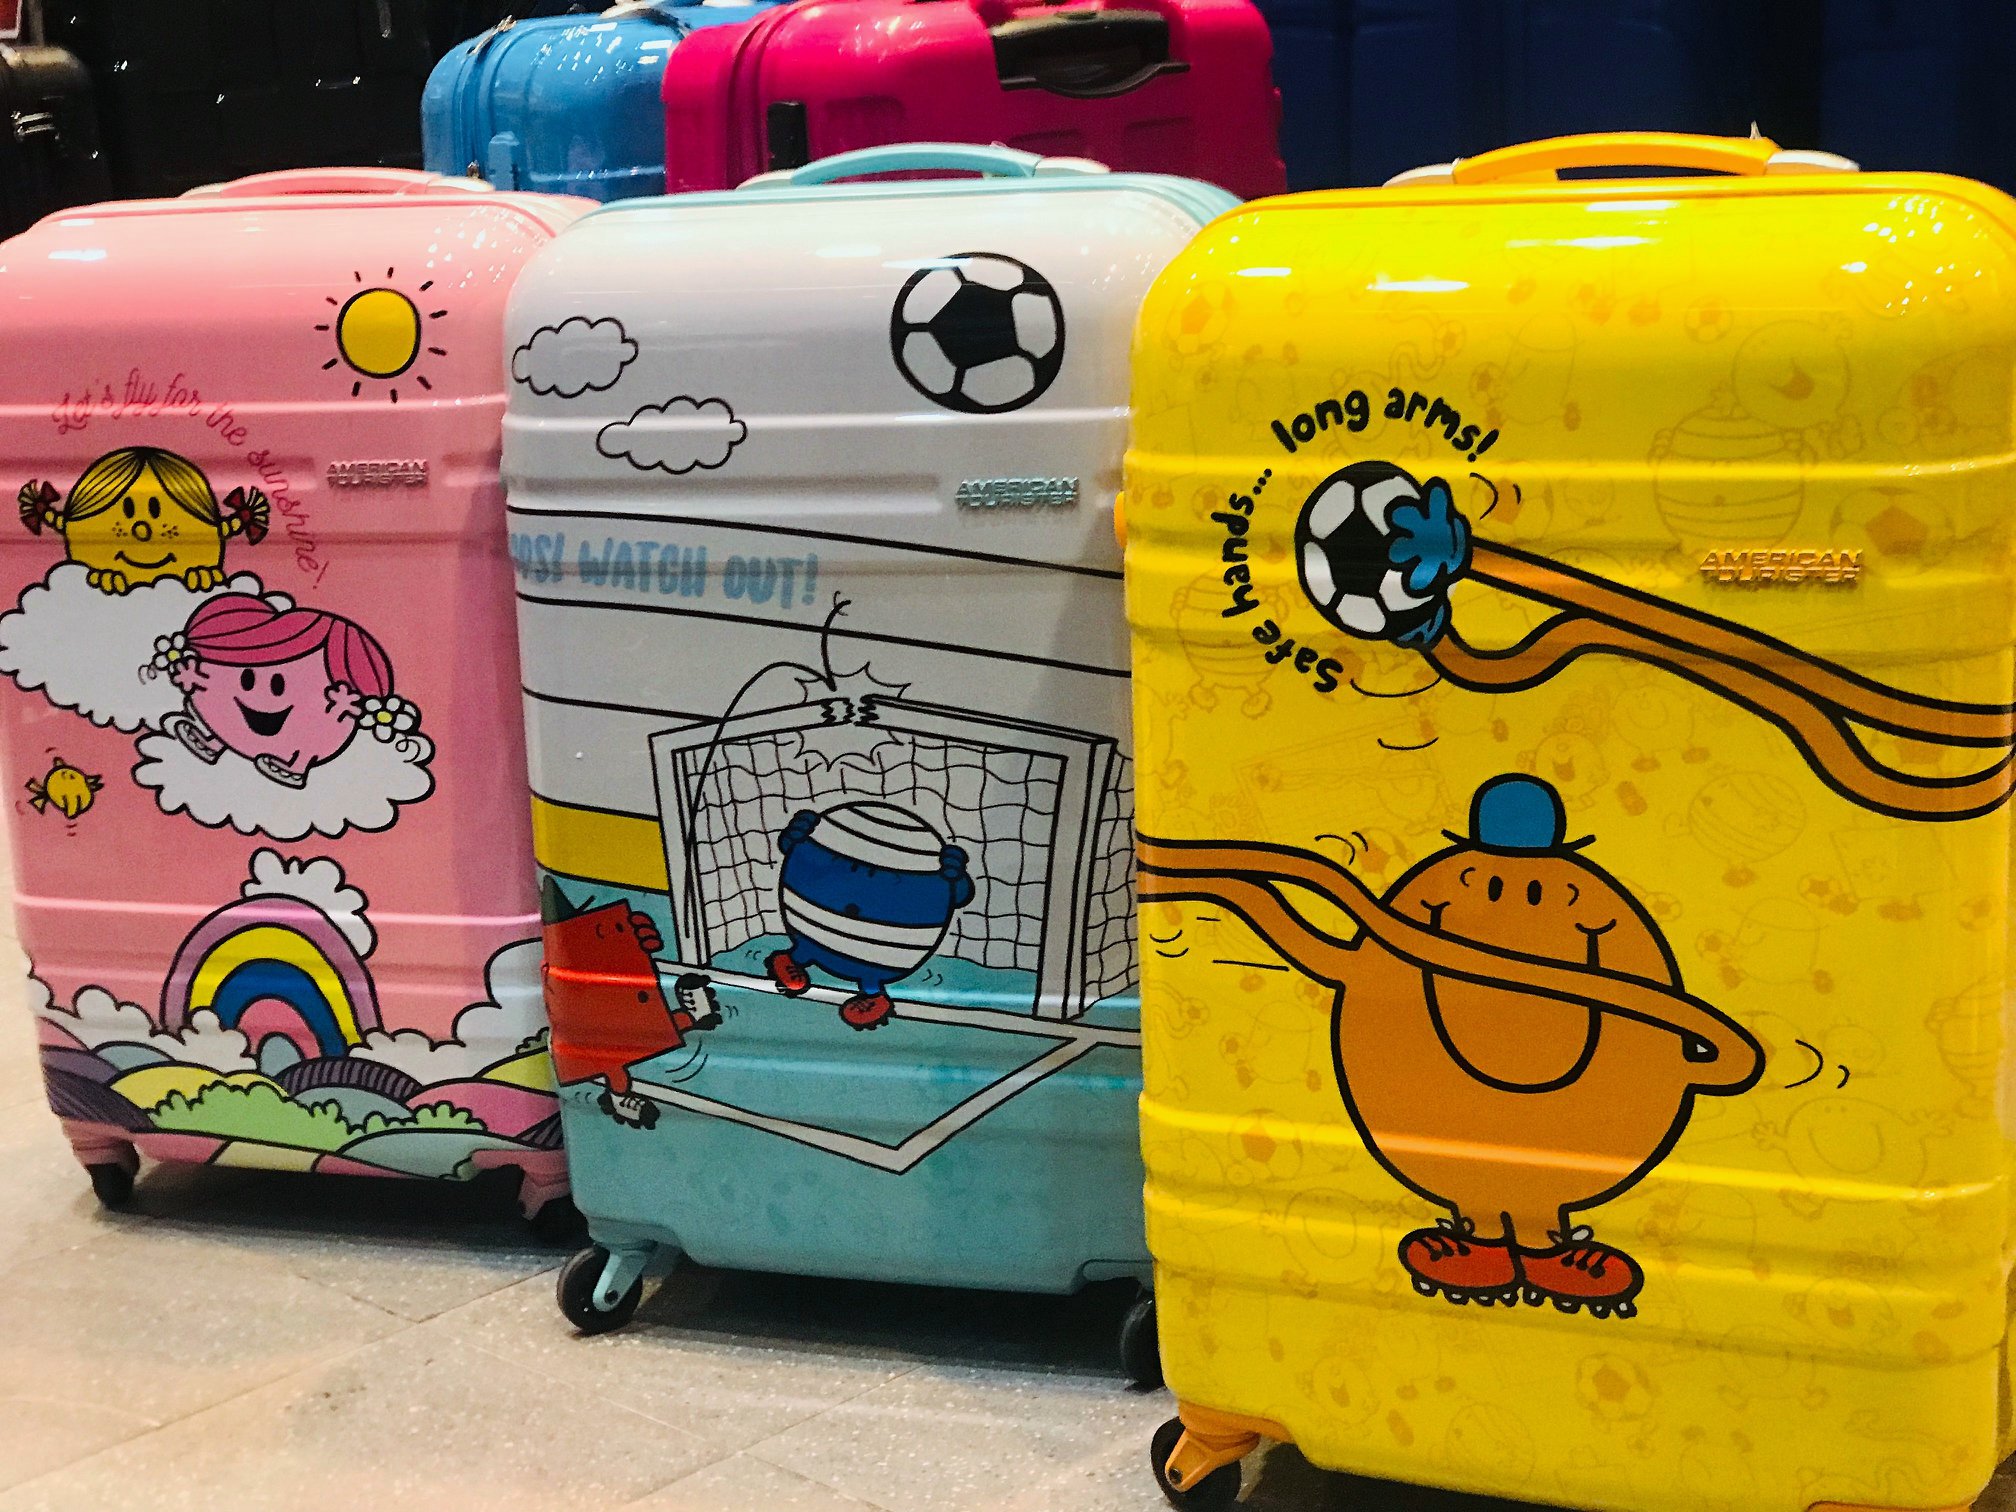 Up to 50% off at Takashimaya&#39;s mega luggage fair till May 26, 2019 - Mothership.SG - News from ...